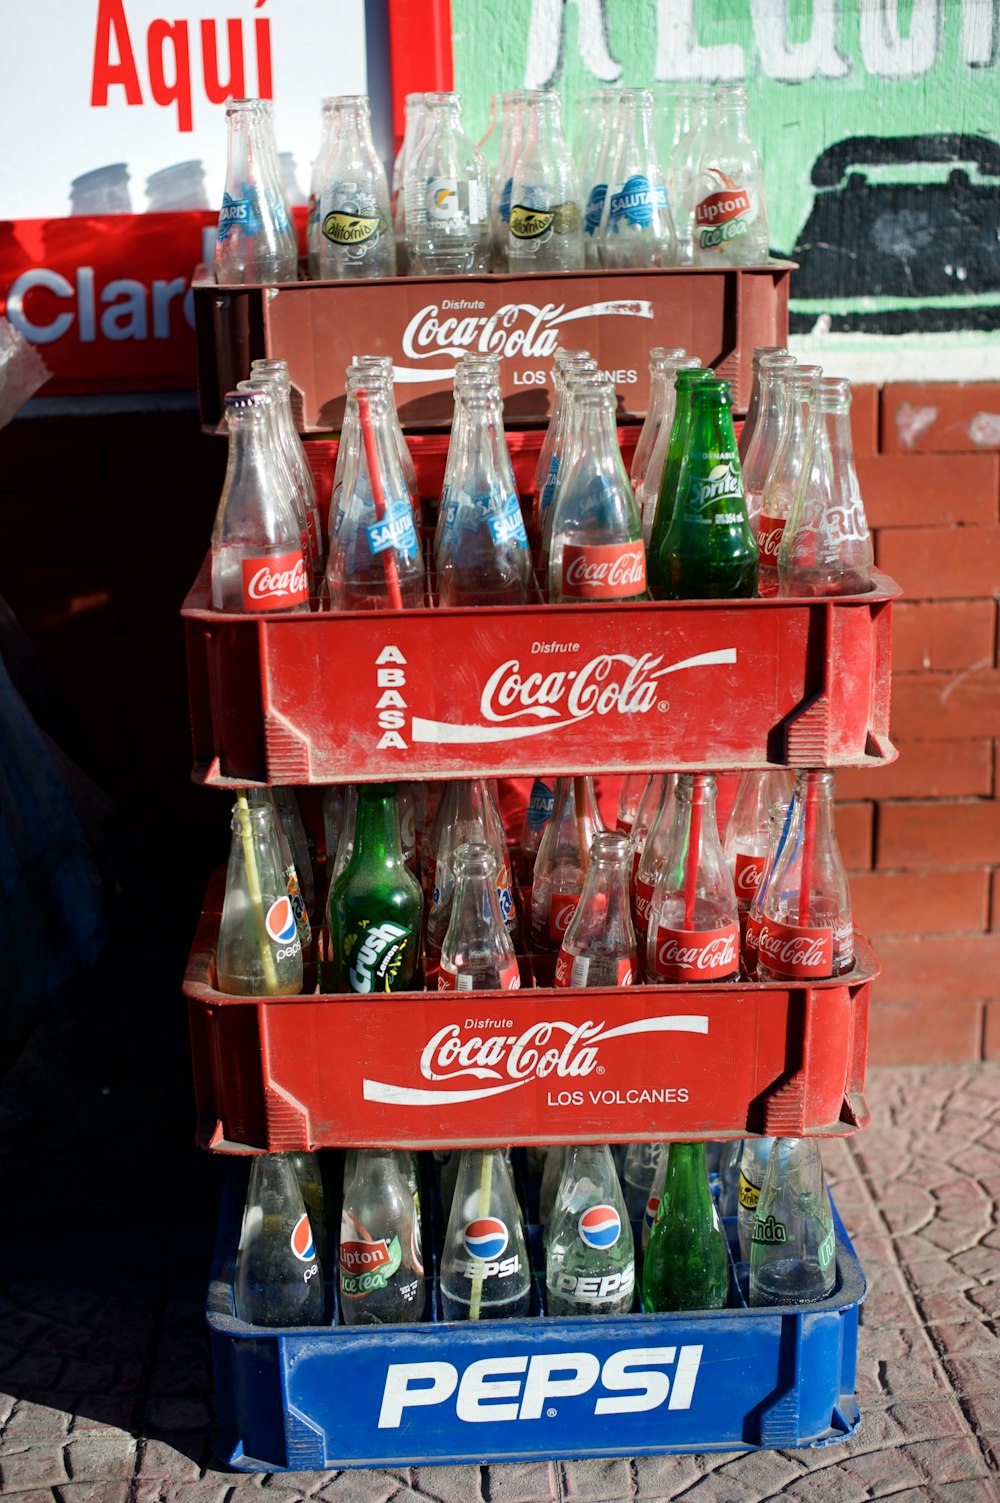 Stapel Coca-Cola-Glasflaschen in Kisten